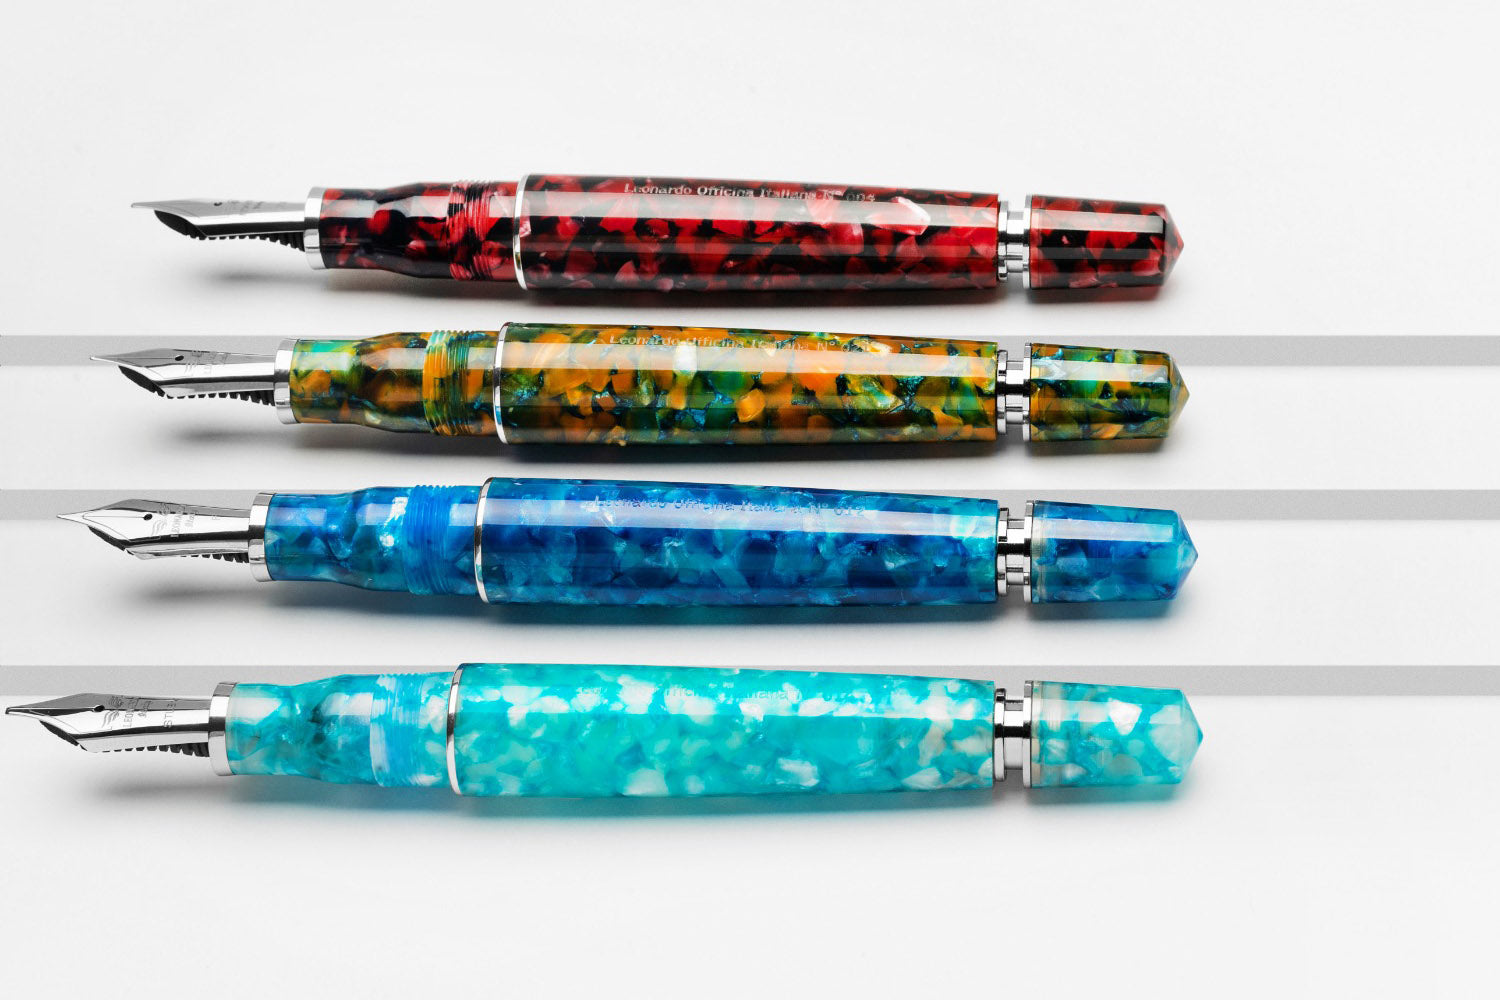 Leonardo Momento Zero Grande - new 2020 colors - fountain pens | Pen Venture - Passion for Luxury